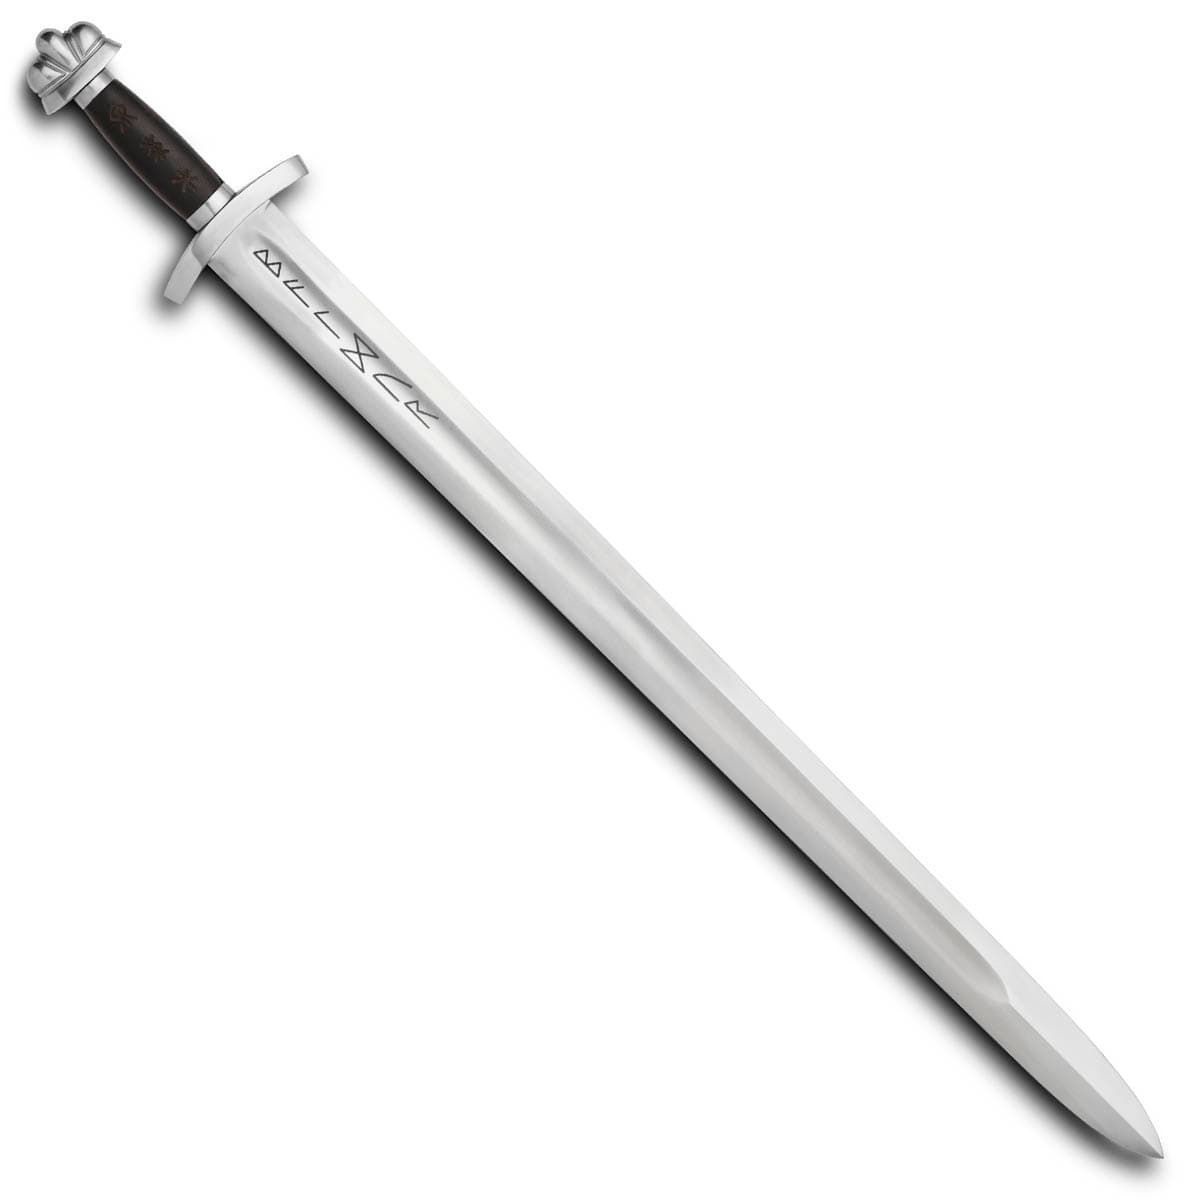 Sword of Baldur